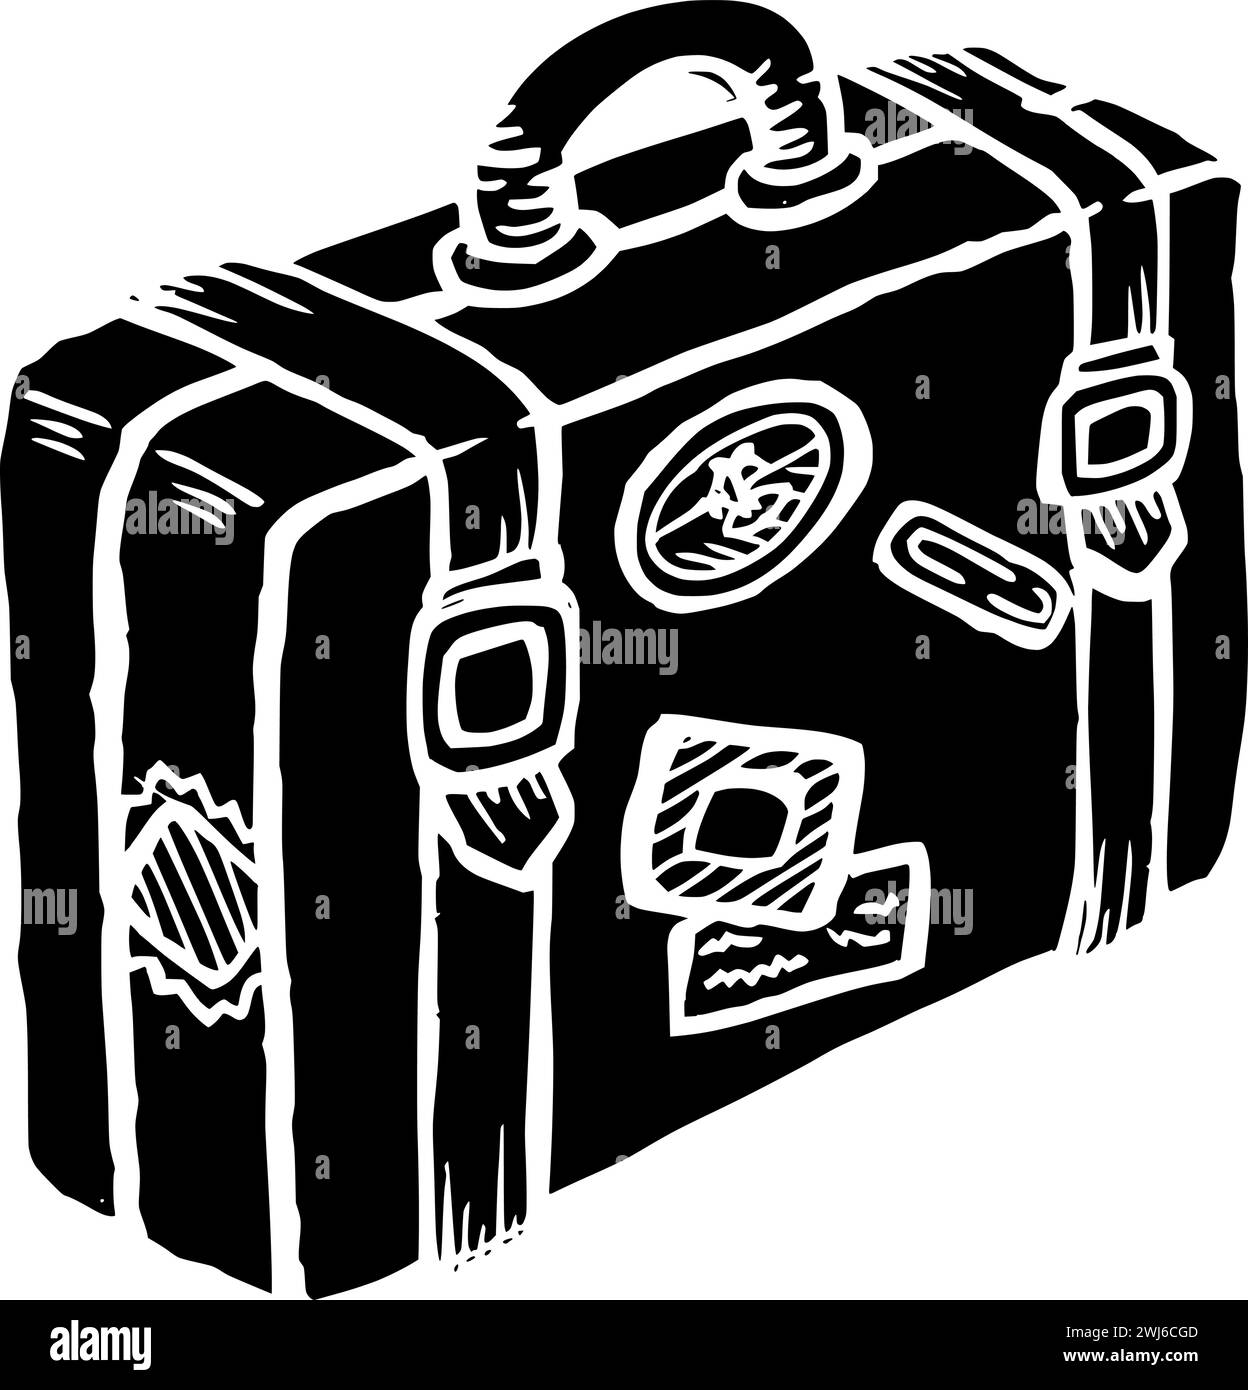 Schwarze Gepäcksilhouette oder flache Tasche Illustration des Reise-Logos Tourismus für Urlaub mit touristischem Symbol und Reisegepäck als Reisekoffer Stock Vektor